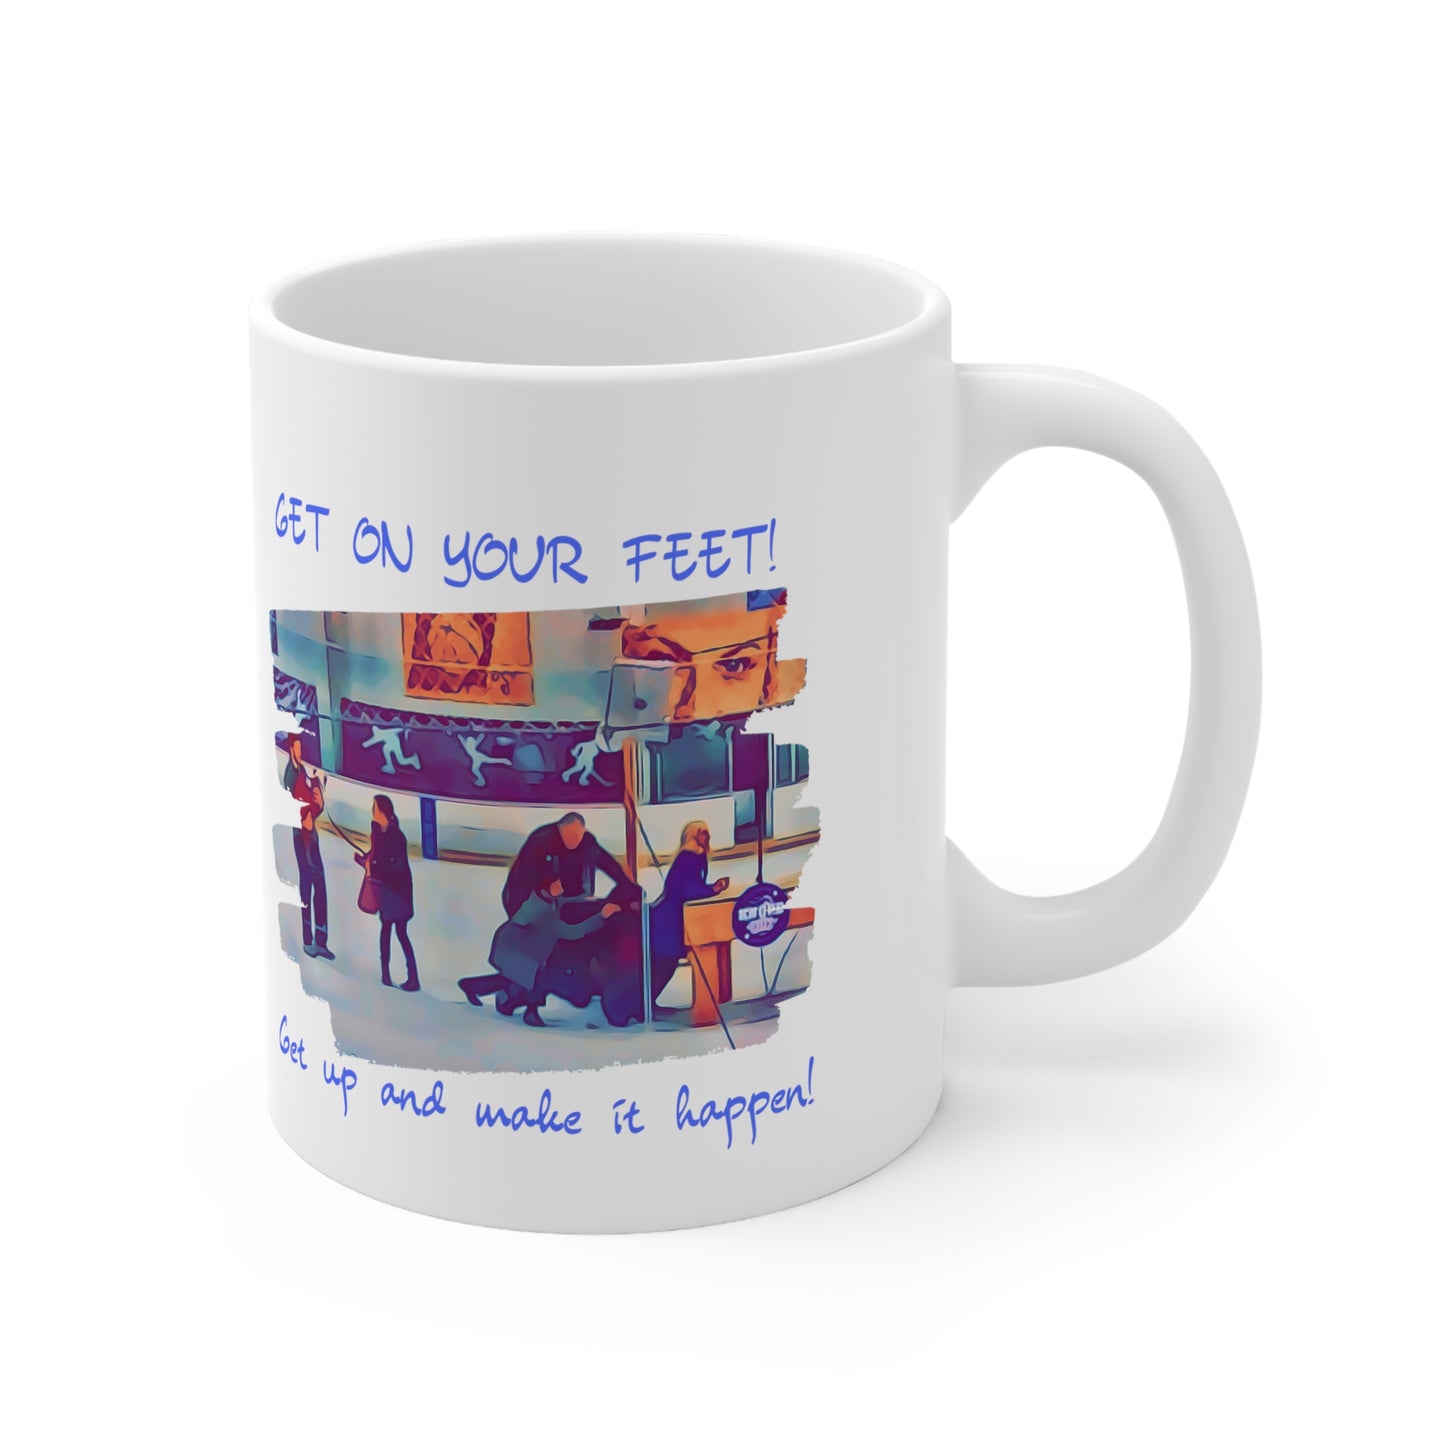 Parks and Recreation mug / Leslie Knope inspirational mug / Parks and Recreation fan gift